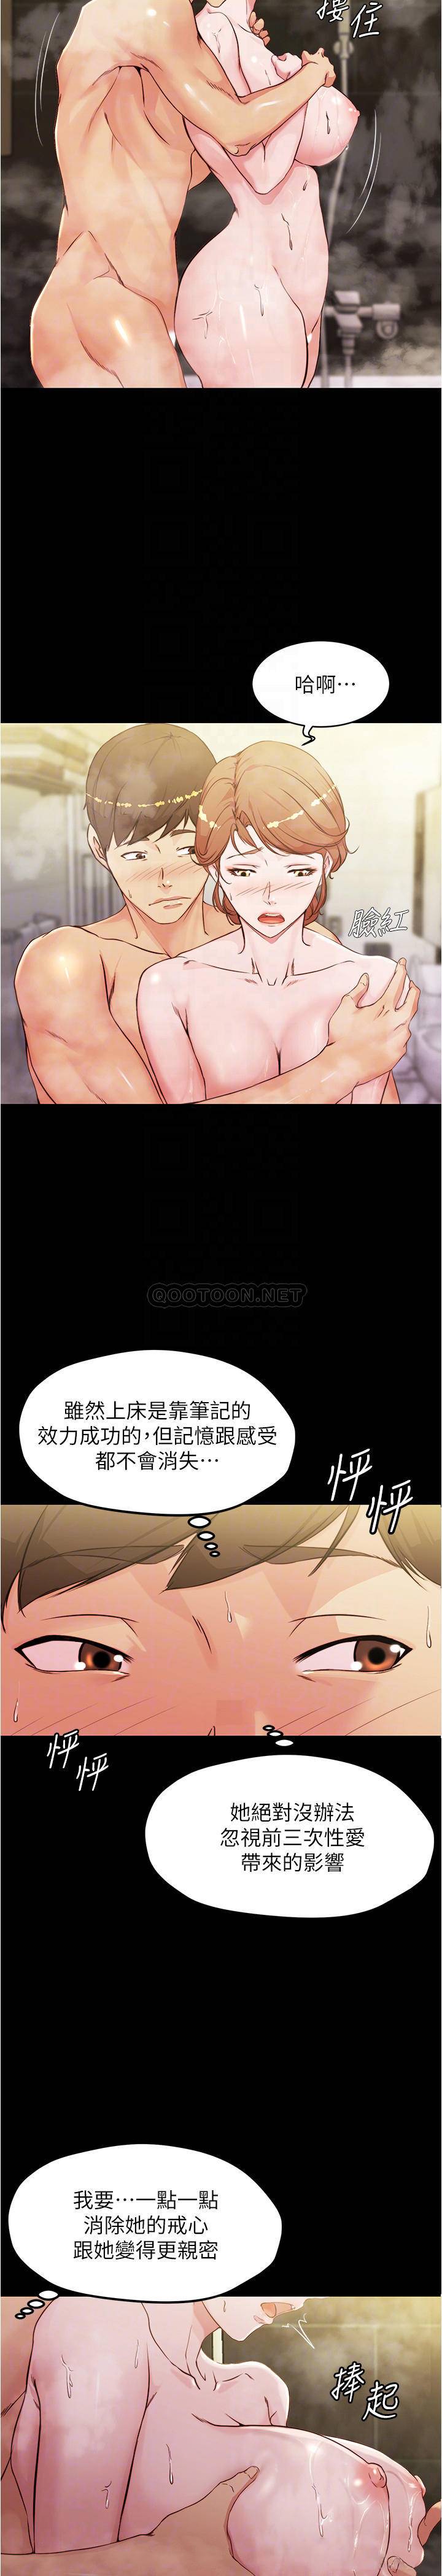 韩国污漫画 小褲褲筆記 第31话 - 你想再来一炮吧? 6